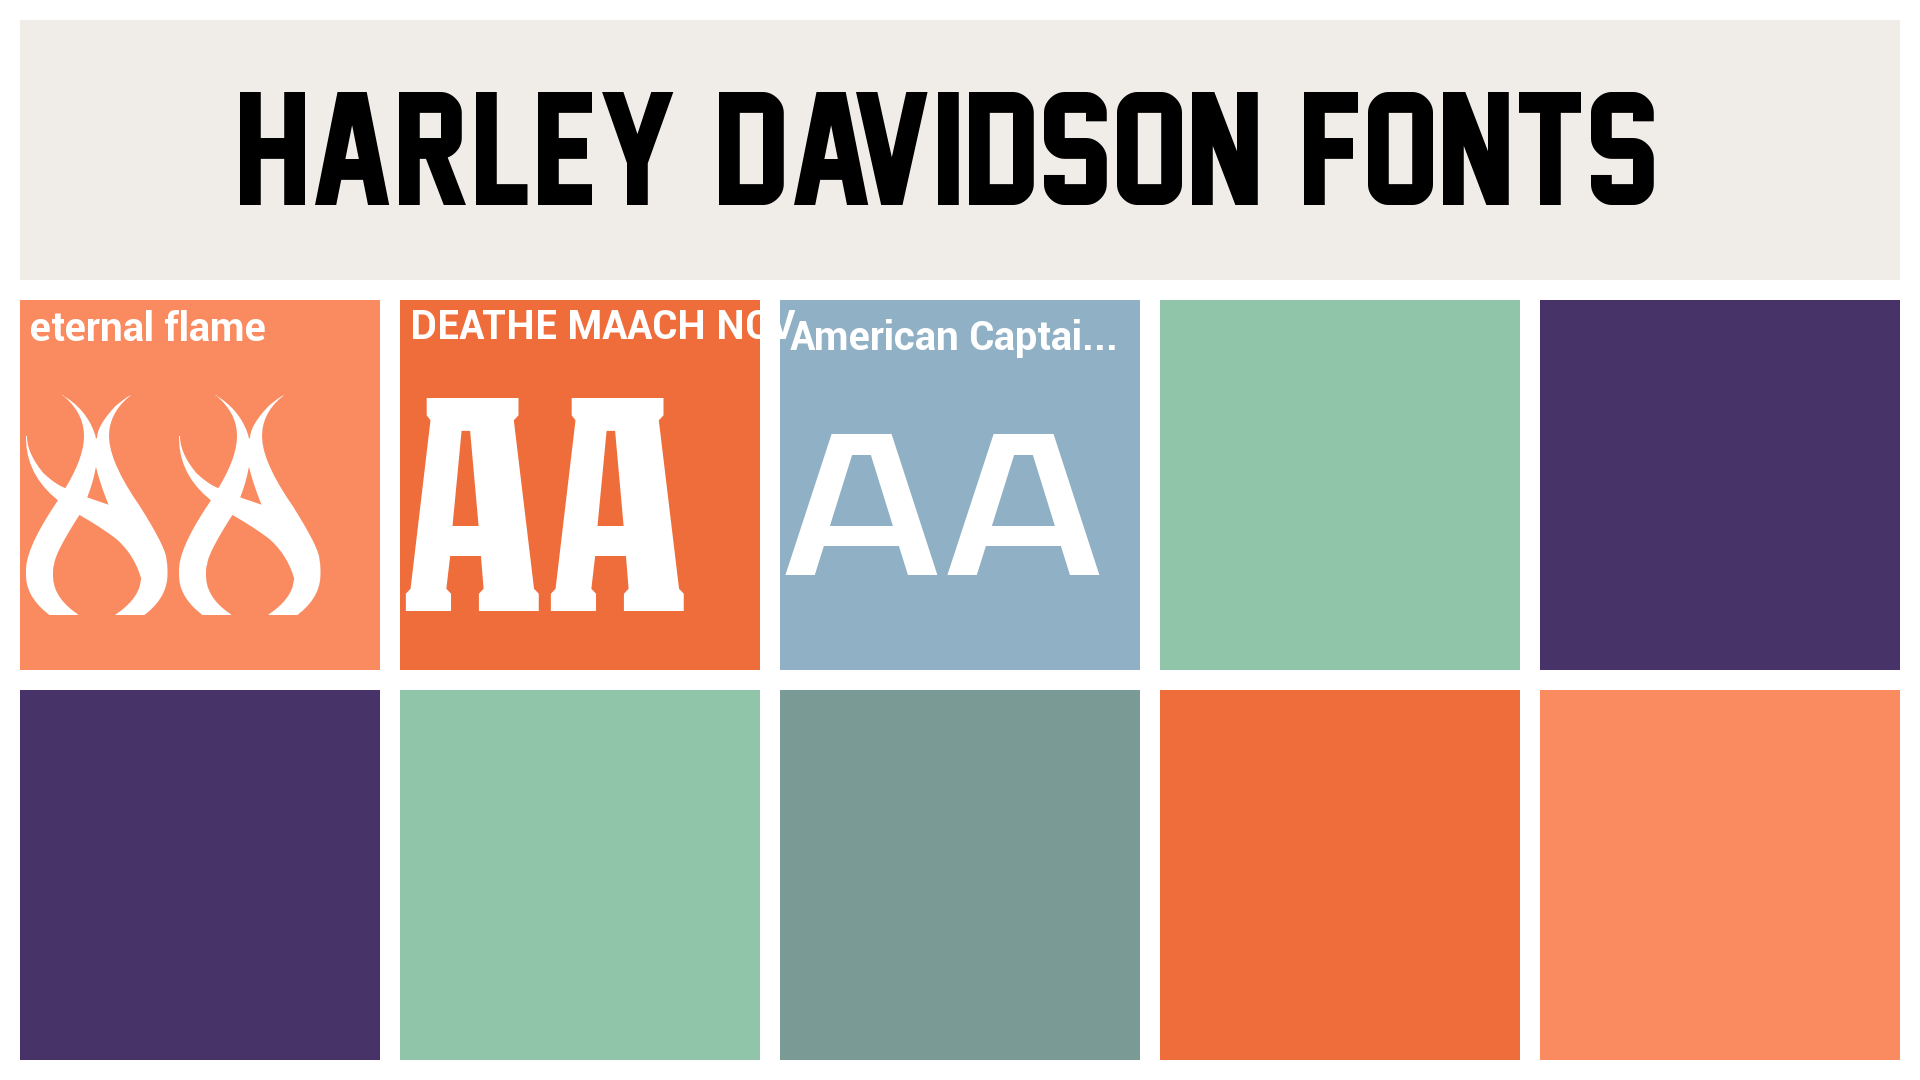 harley davidson fonts - eternal flame Font